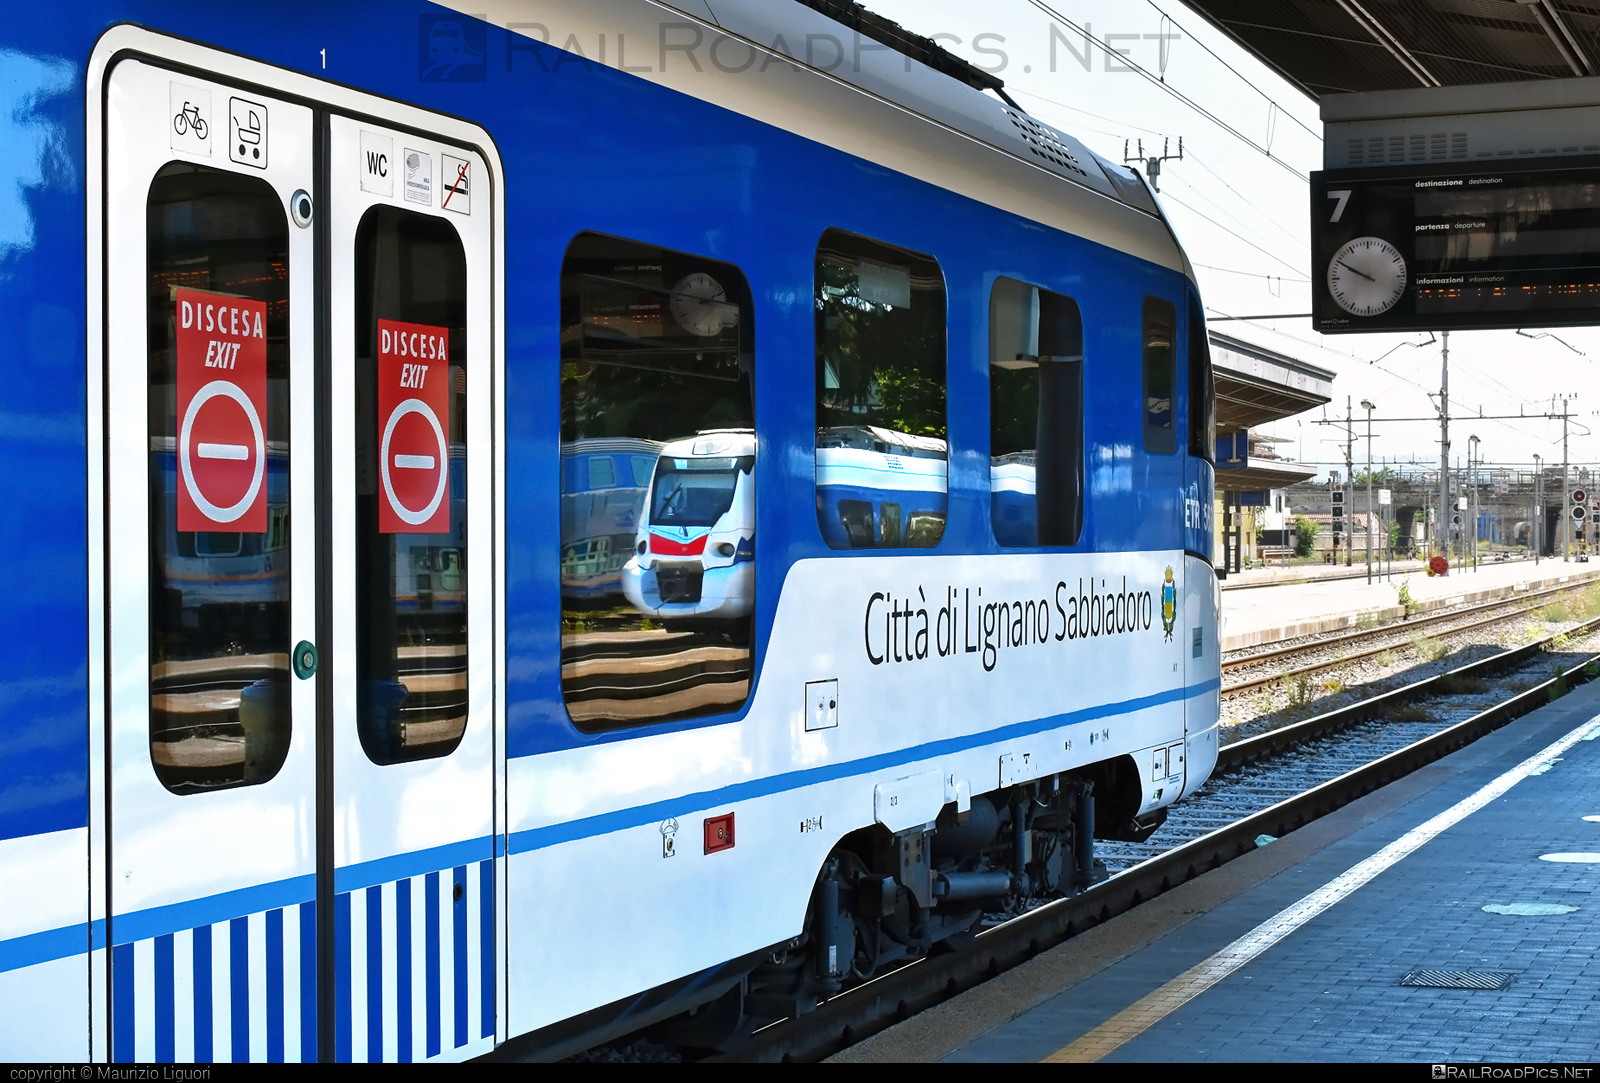 CAF Civity - 563 006-7 operated by Trenitalia S.p.A. #ConstruccionesYAuxiliarDeFerrocarriles #caf #cafCivity #civity #ferroviedellostato #fs #fsitaliane #trenitalia #trenitaliaspa